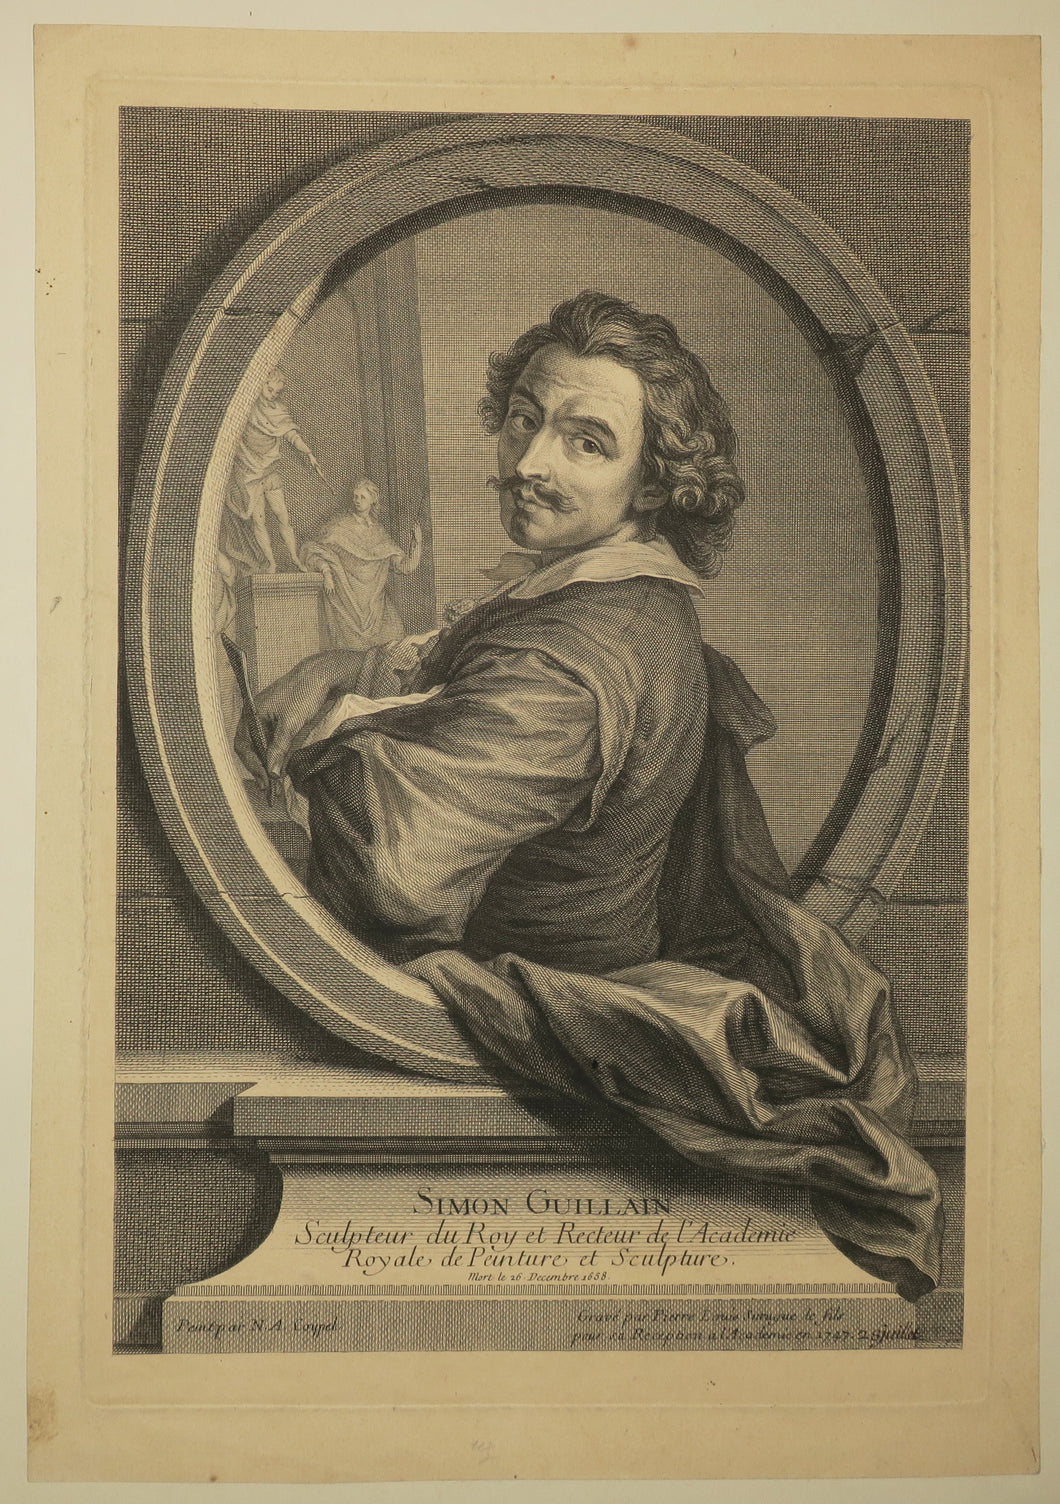 Portrait de Simon Guillain, Sculpteur du Roy et Recteur de l'Académie Royale de peinture et sculpture (1581-1658).  1747.